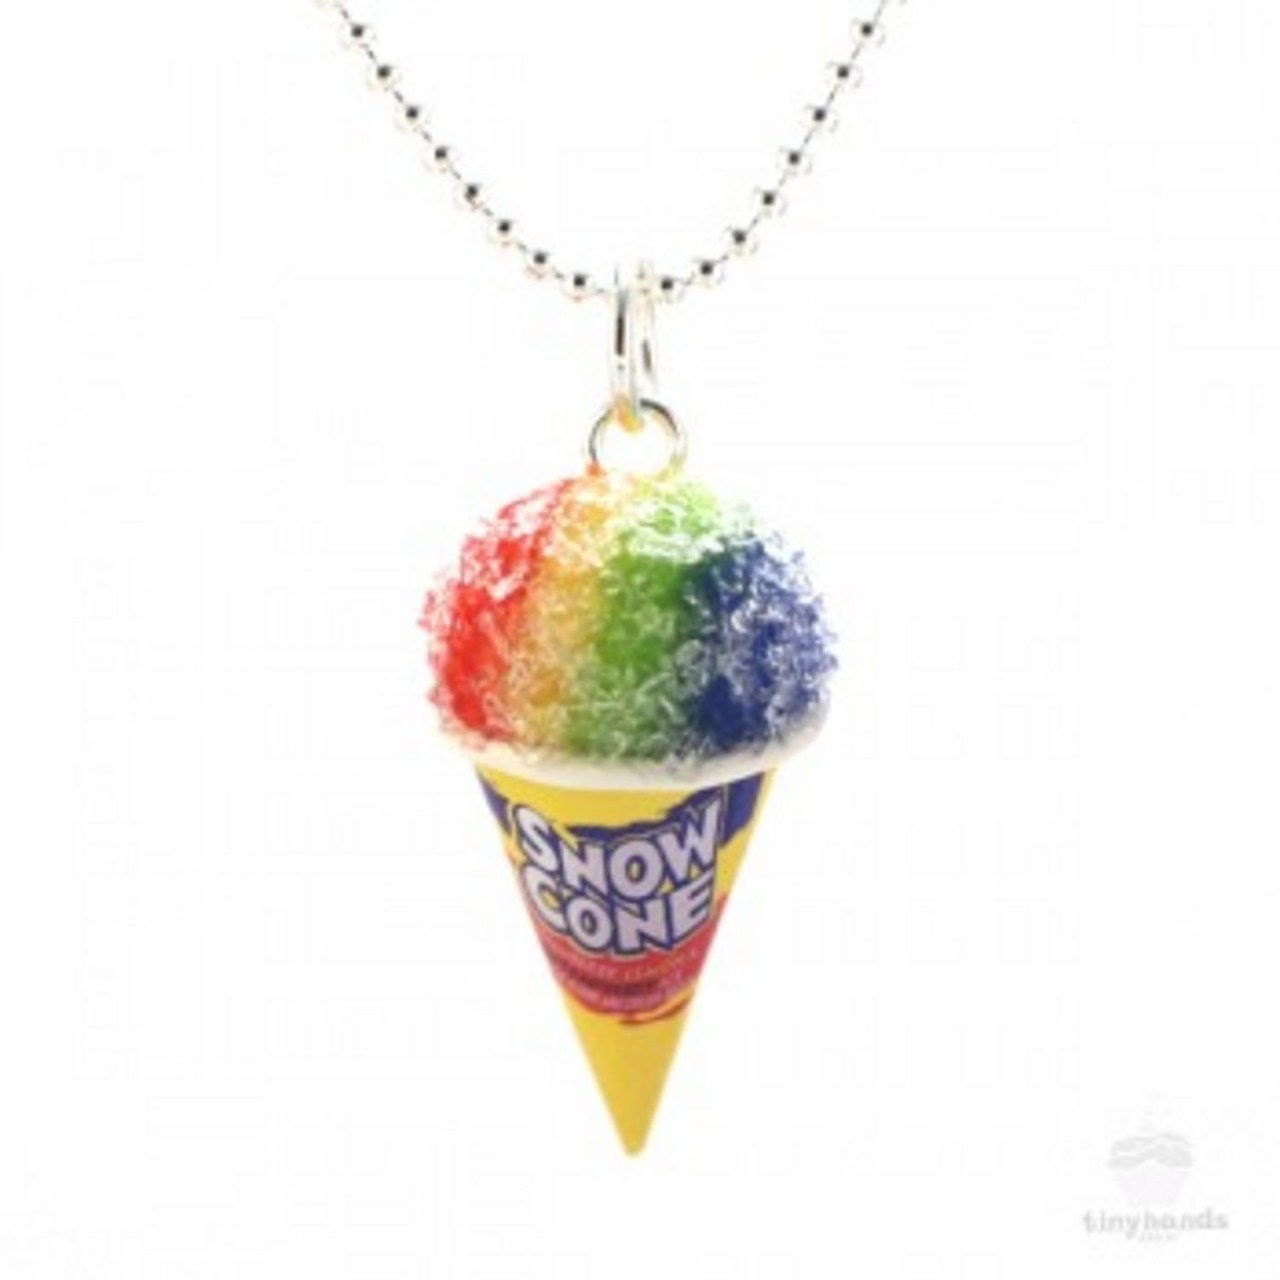 香 snow cone necklace